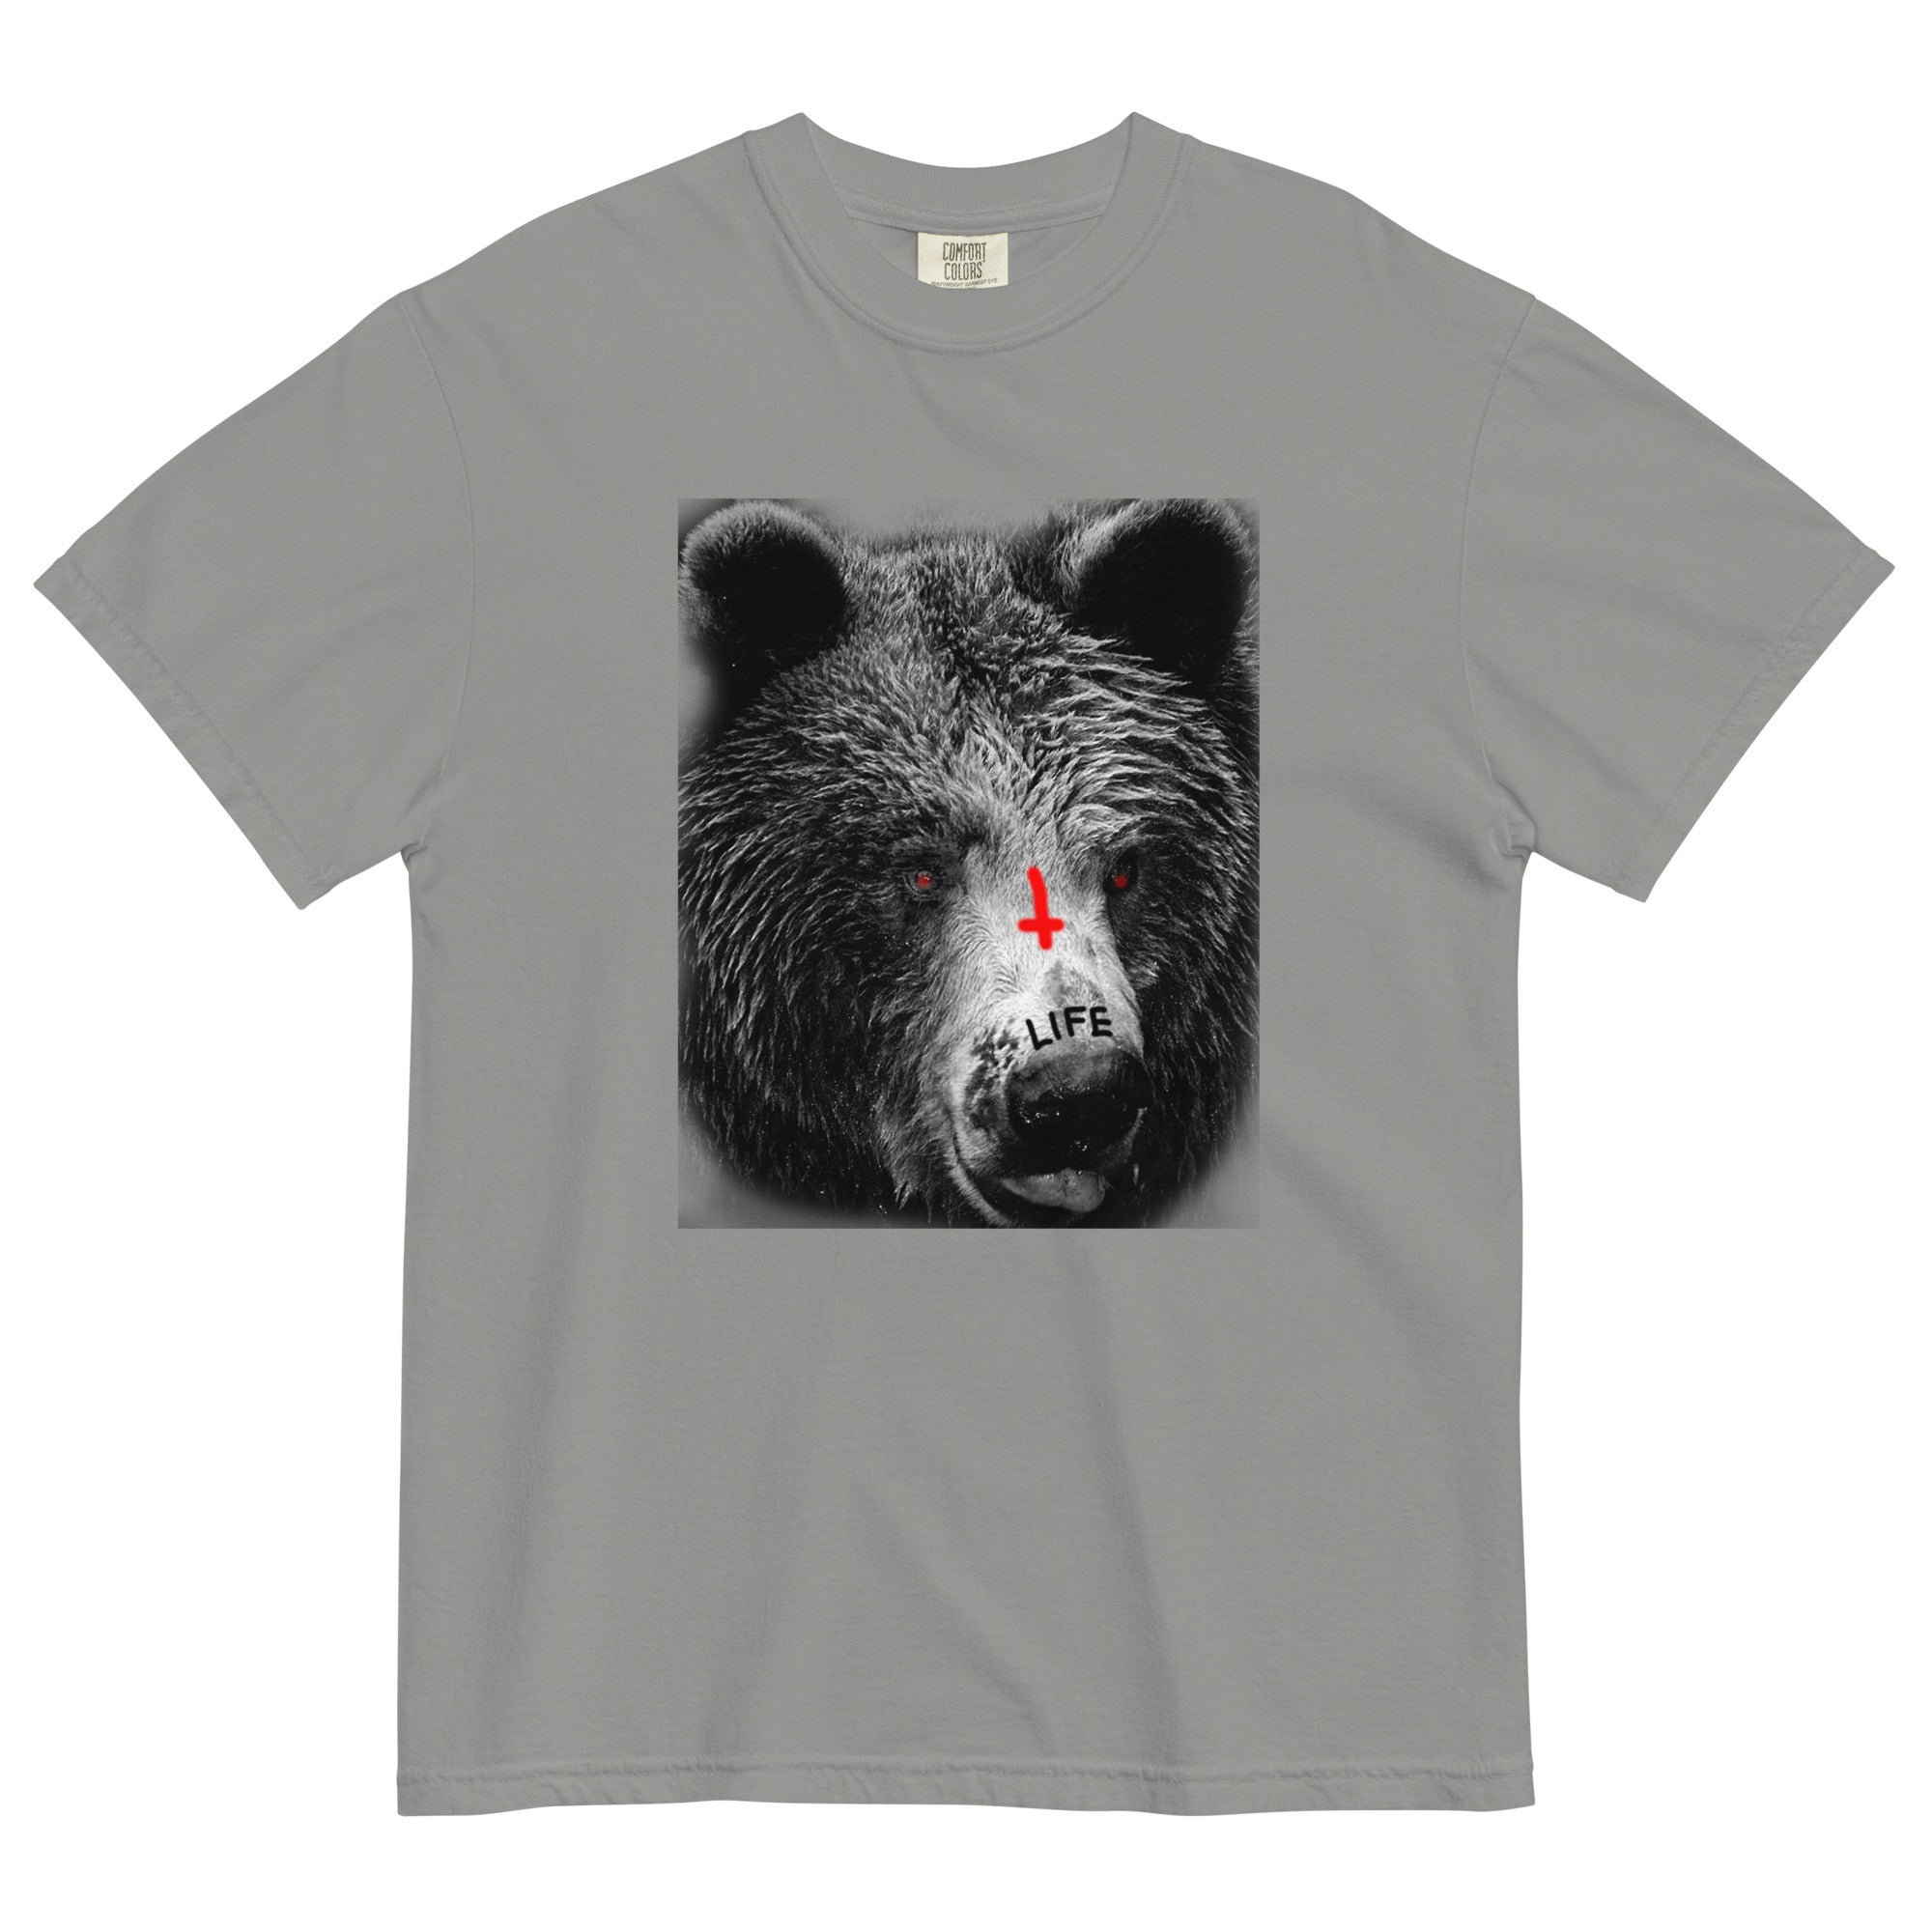 LIFE BEAR Garment-Dyed Heavyweight t-shirt